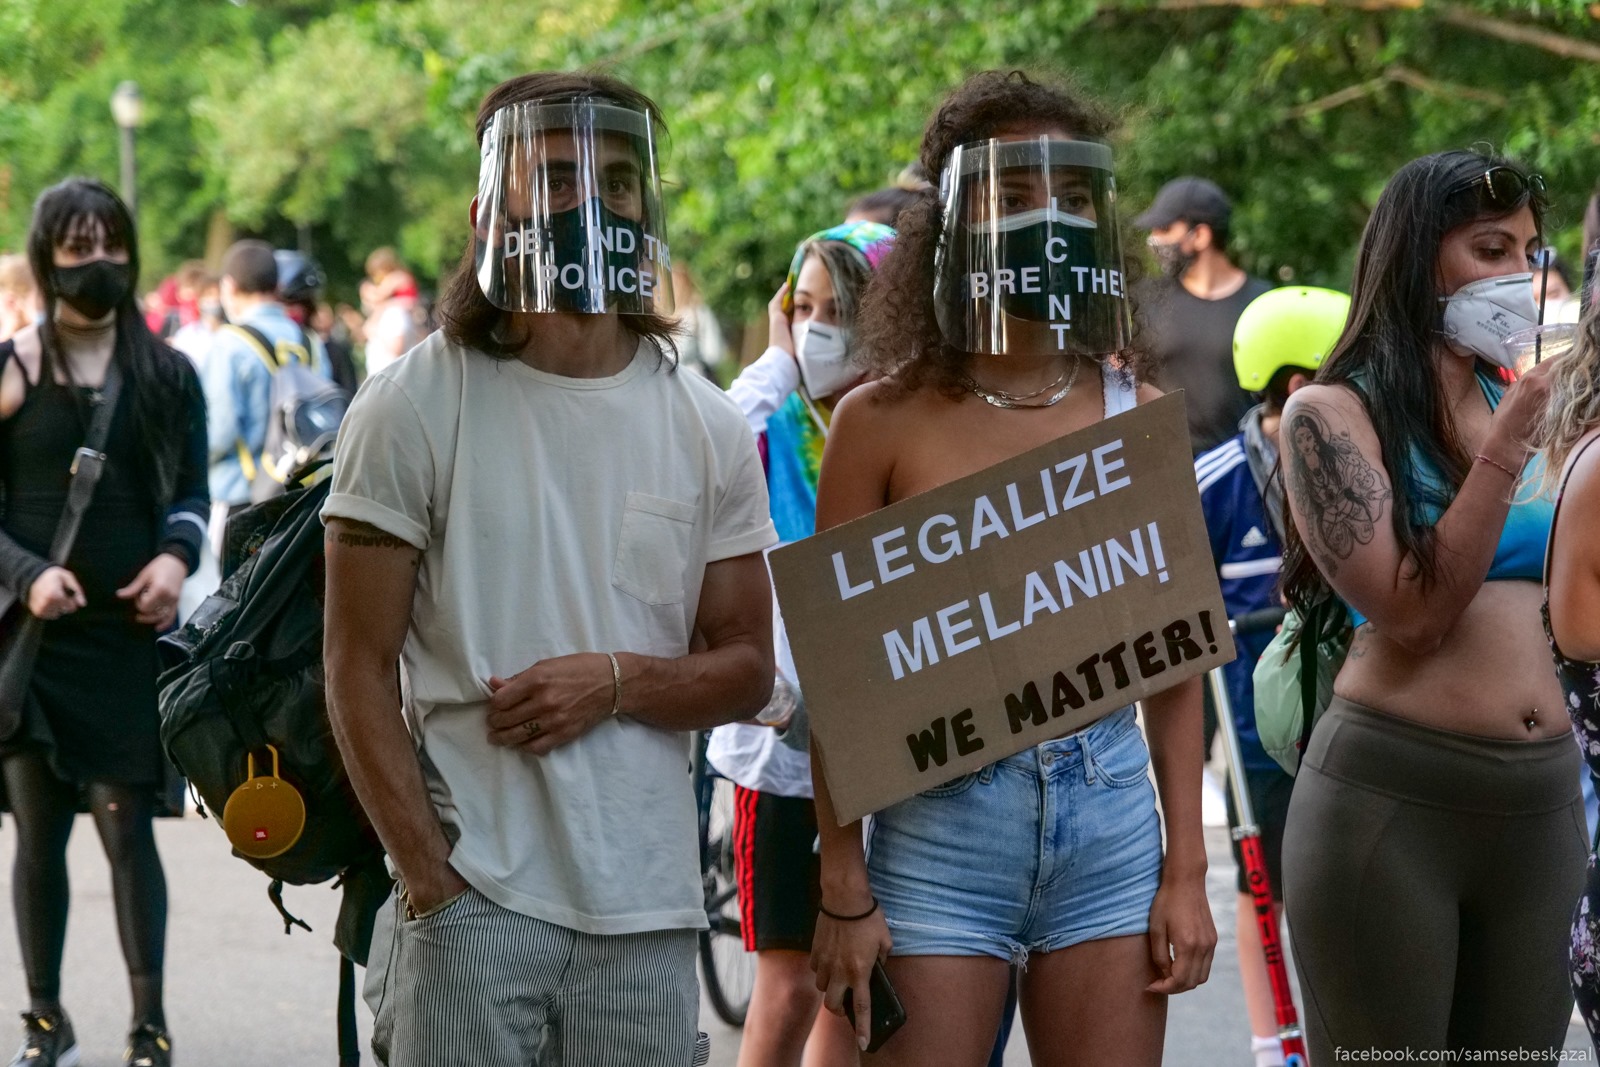 Legalizujte melanin!